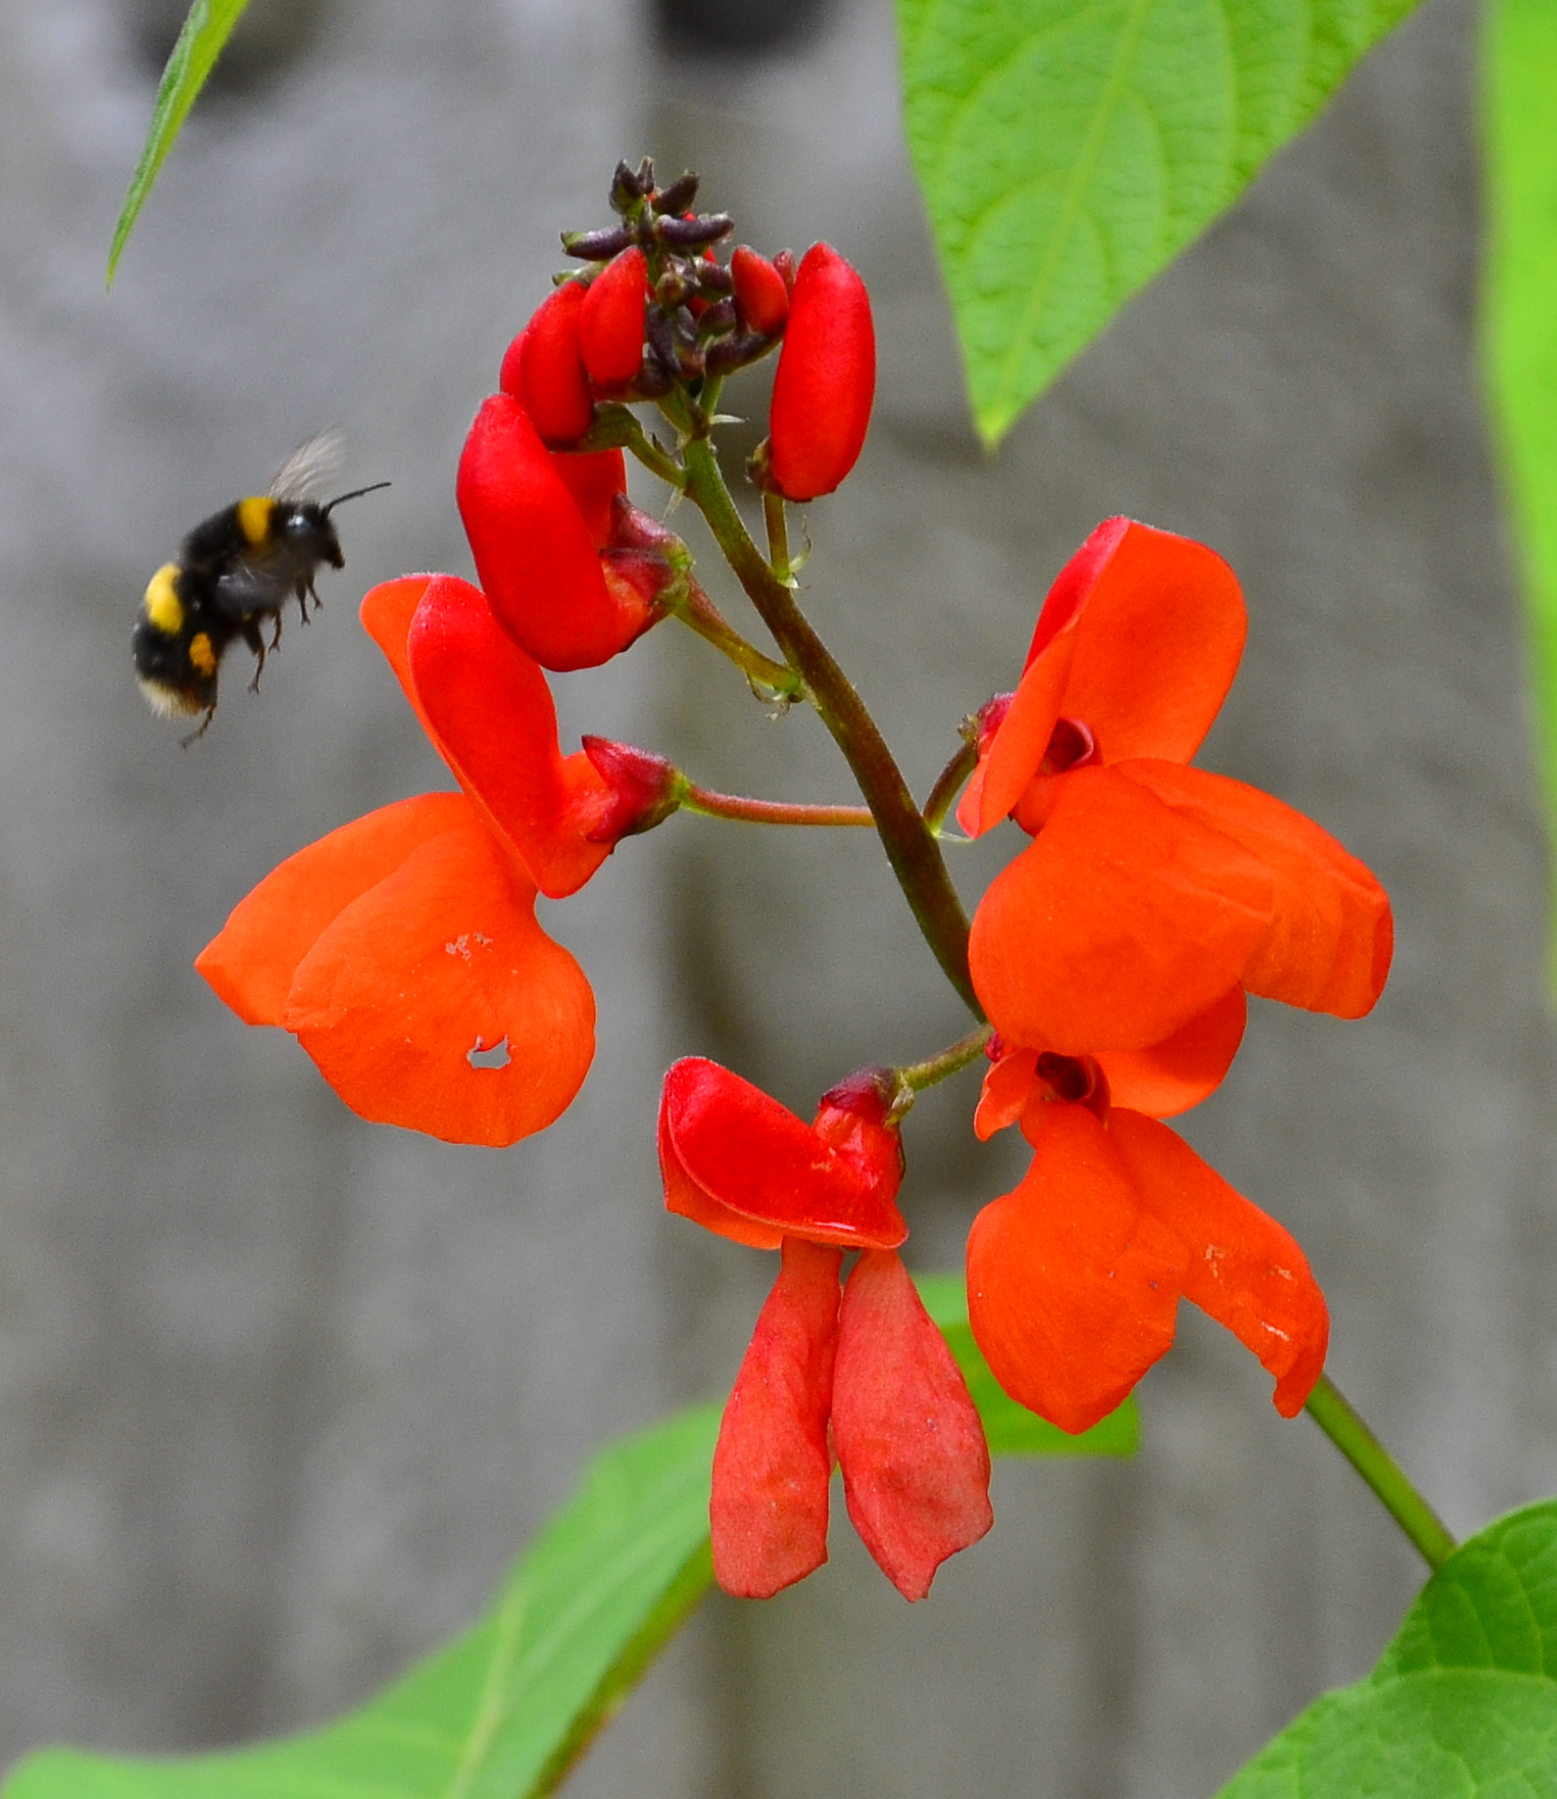 Bee approaching flower